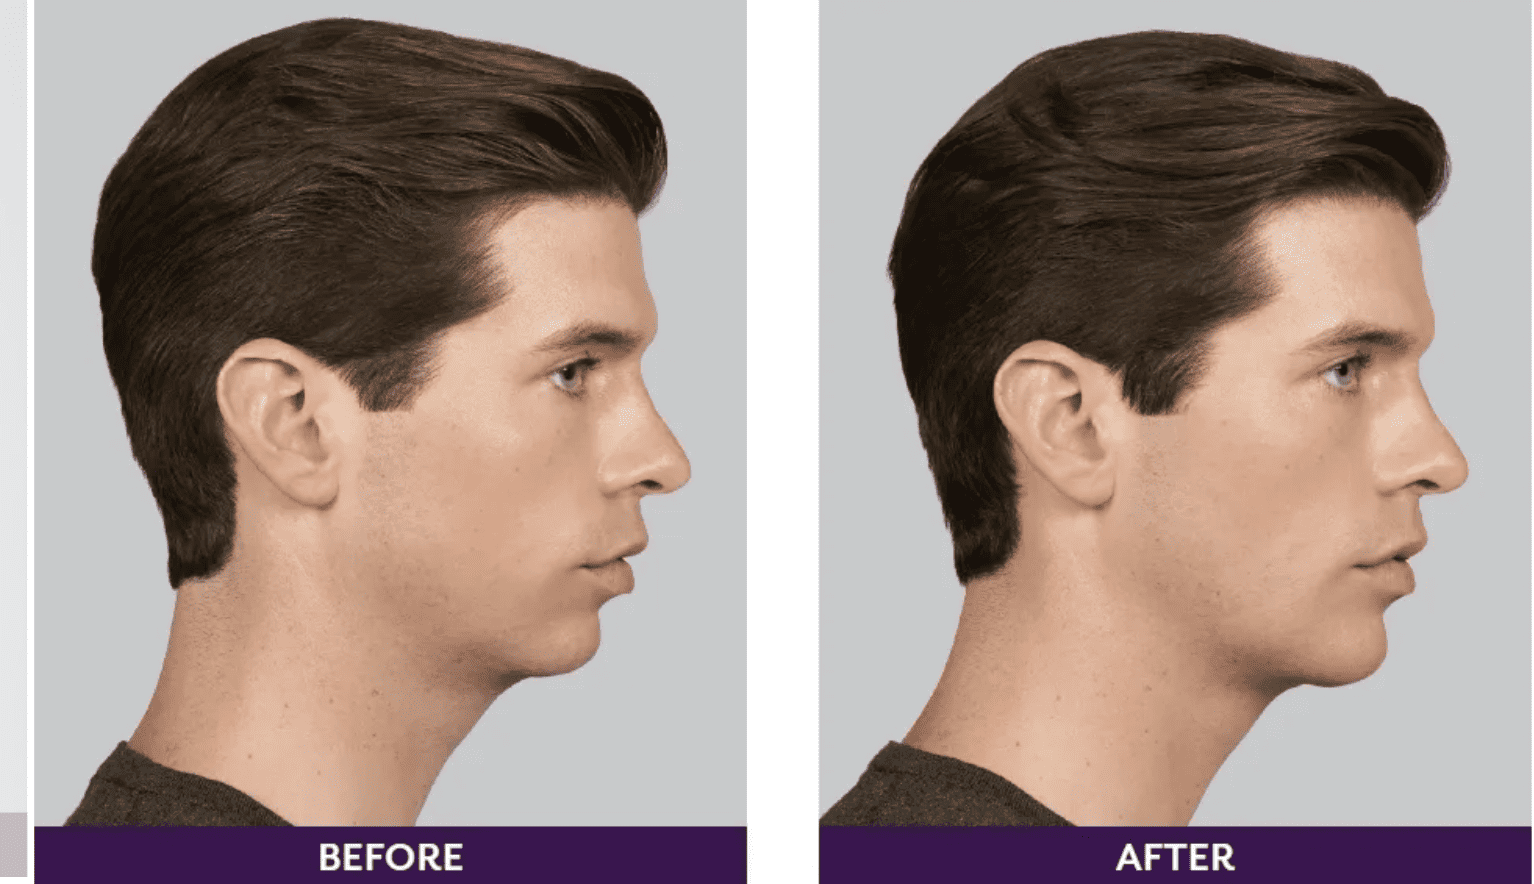 Before and after image of dermal filler.